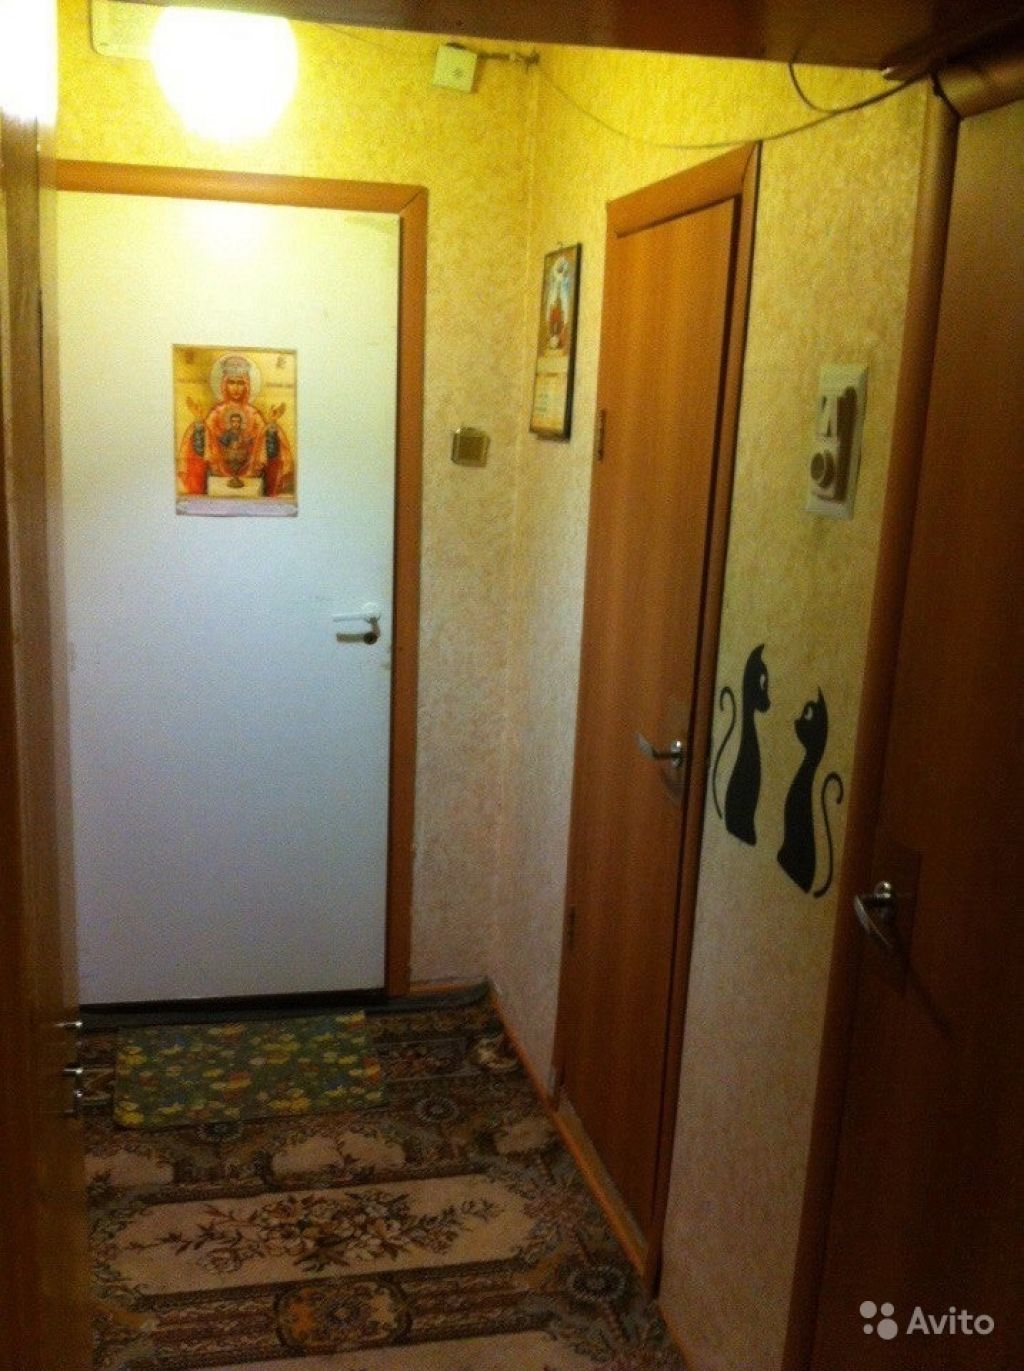 Сдам квартиру 1-к квартира 39.5 м² на 19 этаже 22-этажного панельного дома в Москве. Фото 1